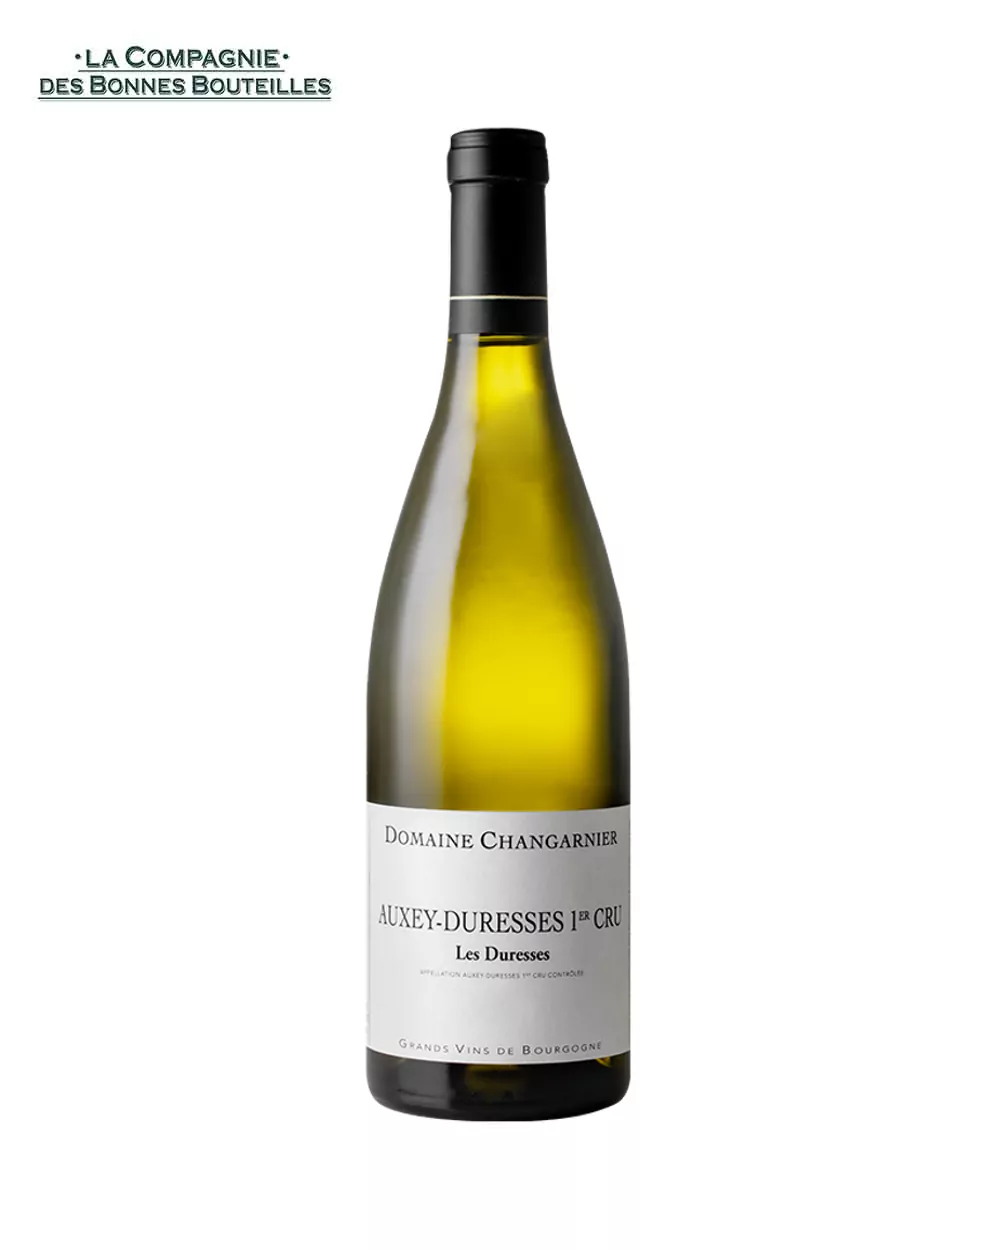 Vin blanc - Domaine Changarnier- Auxey-Duresses 1er cru - Les Duresses 2019